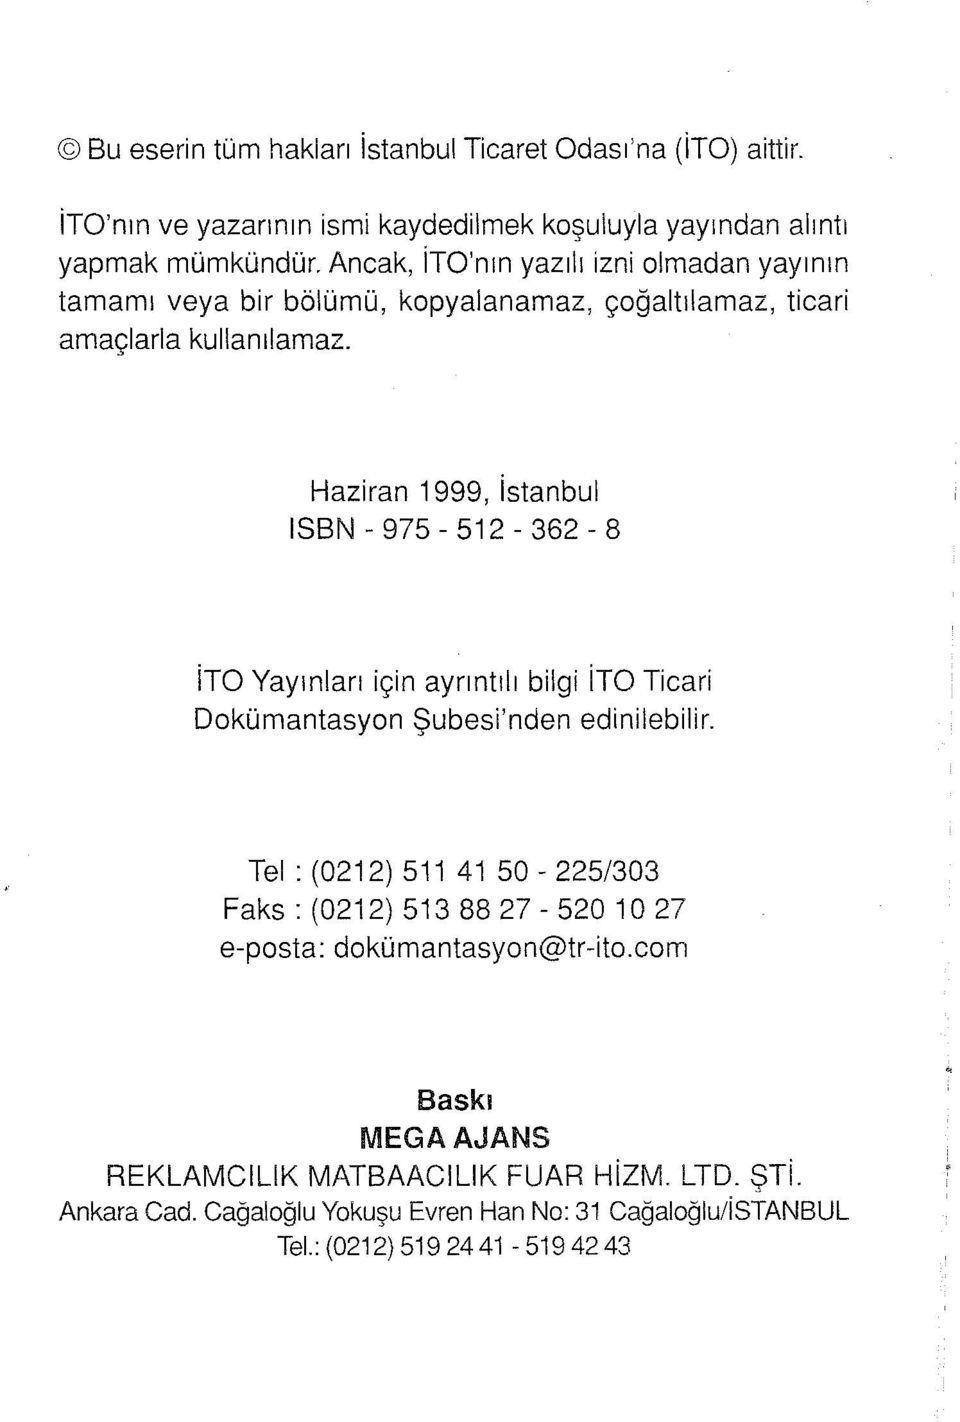 Haziran 999, istanbul ISBN - 975-52- 362-8 ito Yayınları için ayrıntılı bilgi ito Ticari Dokümantasyon Şubesi'nden edinilebilir.